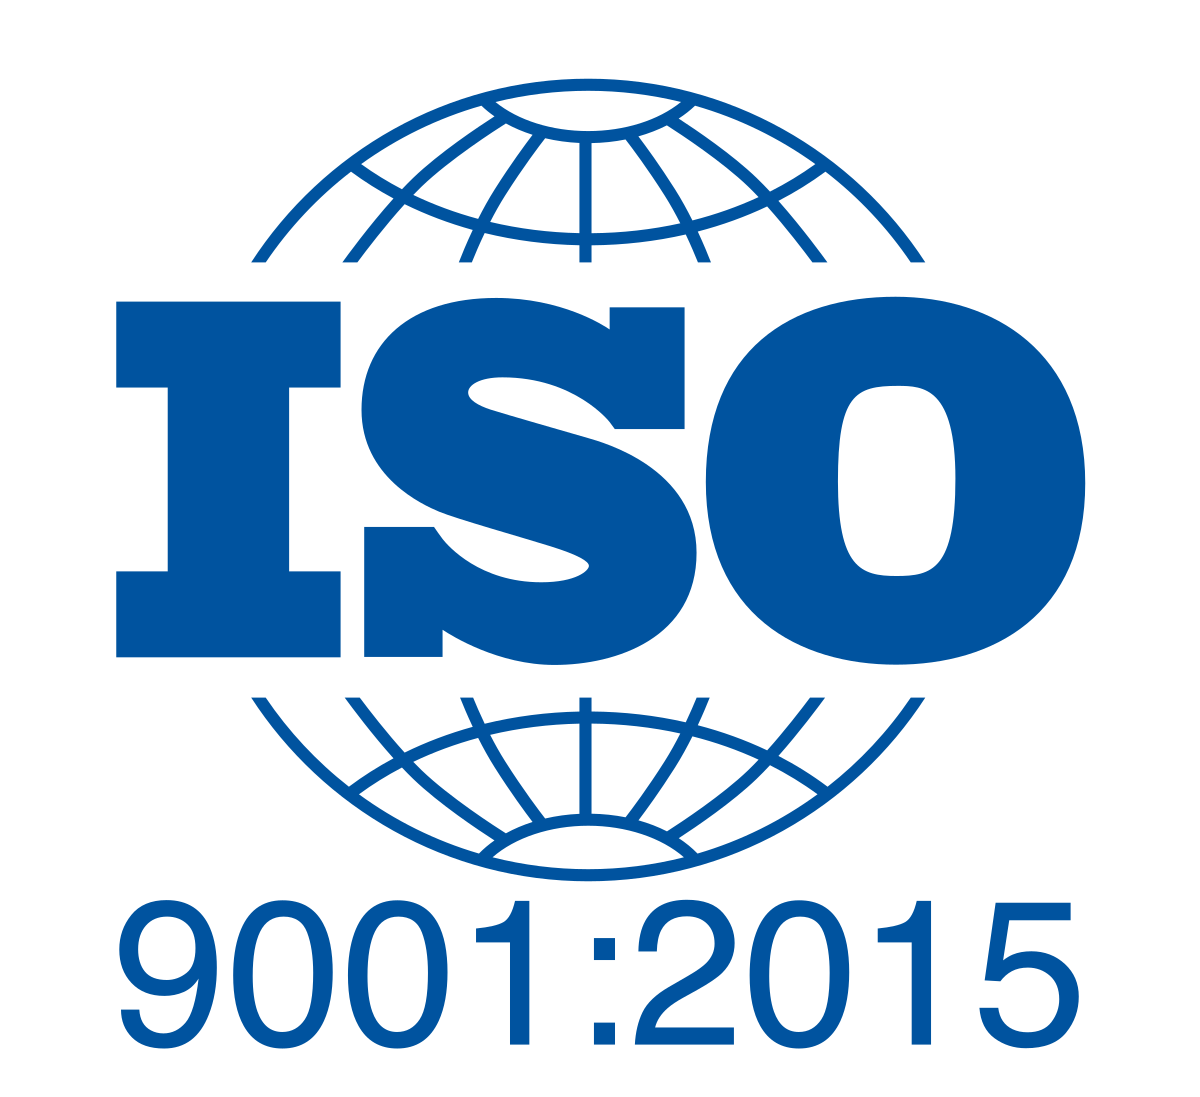 ĐÁNH GIÁ GIÁM SÁT LẦN 2 SAU CẤP CHỨNG NHẬN ISO 9001:2015 | Trung tâm đào đạo bệnh viện Phụ Sản Hà Nội